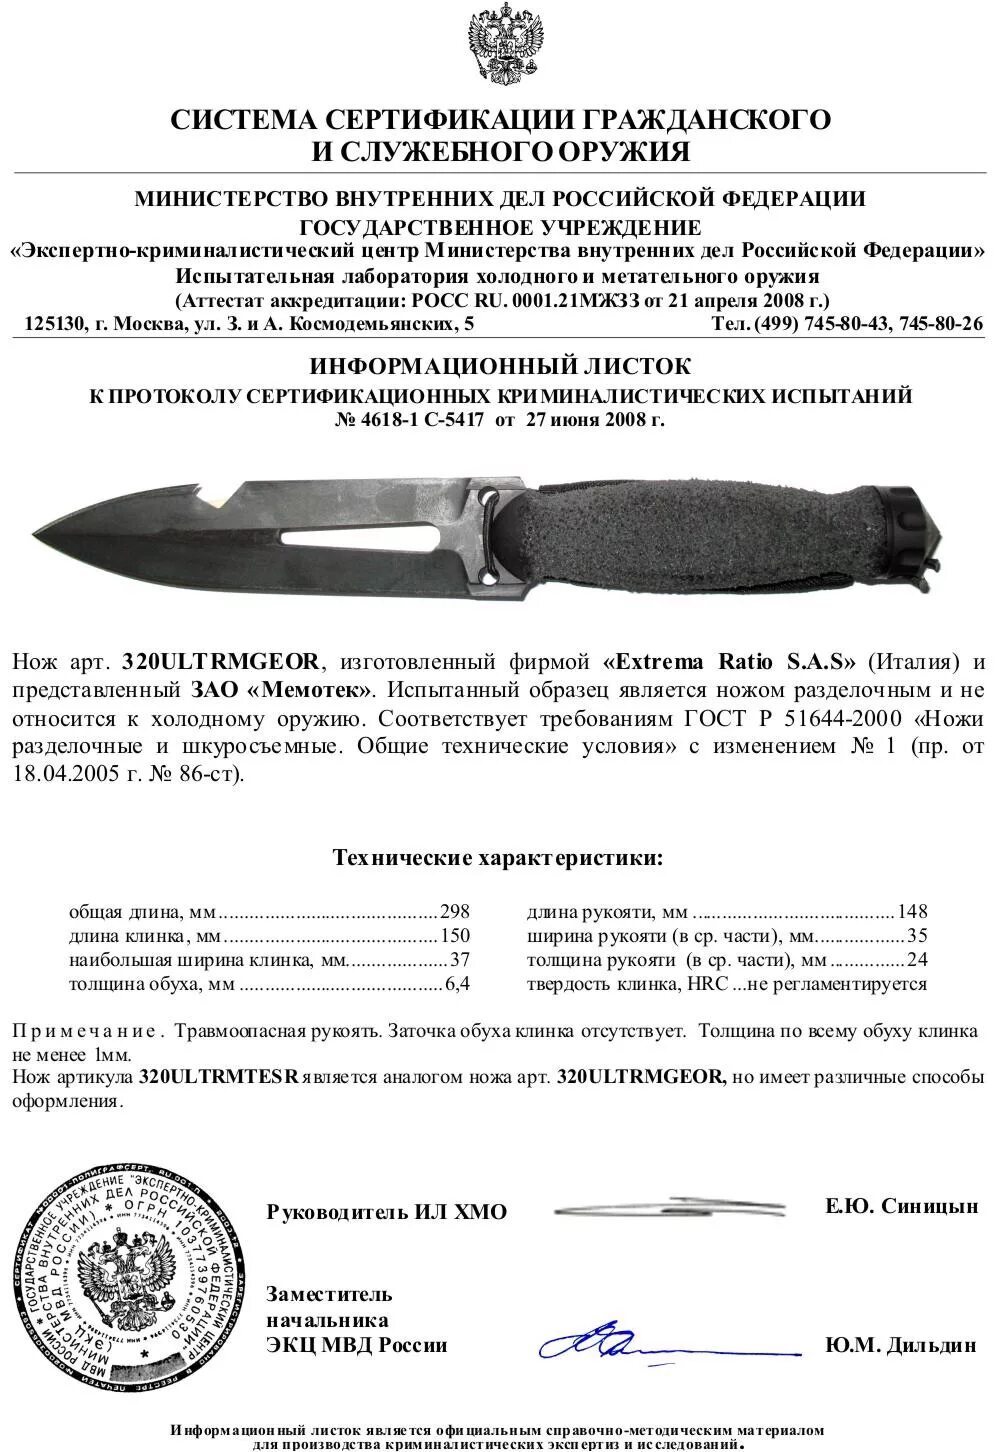 Сертификат соответствия на ножи extrema ratio. Нож extrema ratio Misericordia сертификат. Нож экстрема ратио Фулкрум 2 сертификат. Сертификат на нож extrema ratio.